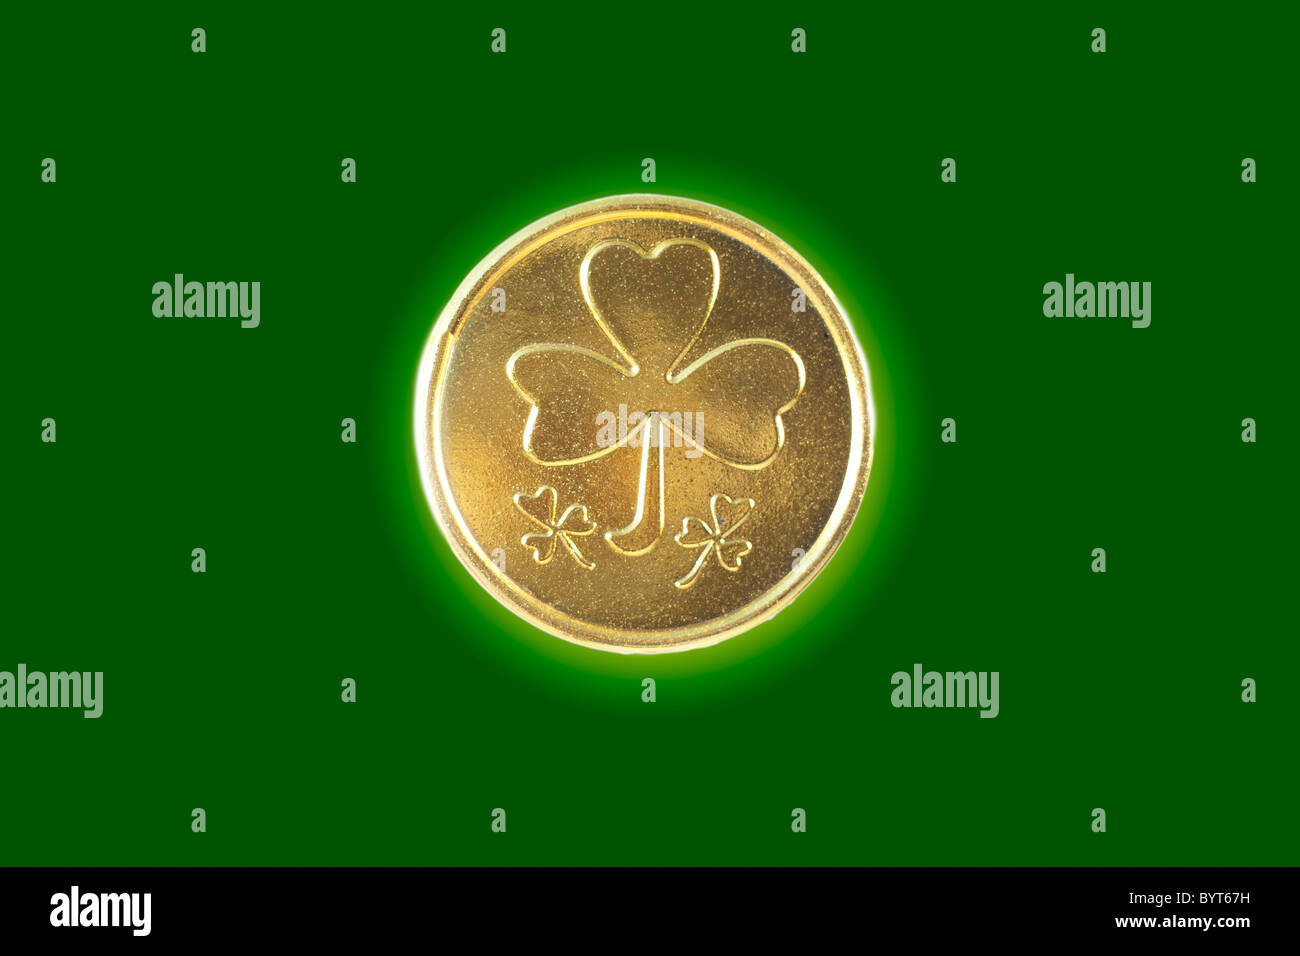 Kleeblatt gold Münze auf einem farbigen Hintergrund Stockfoto